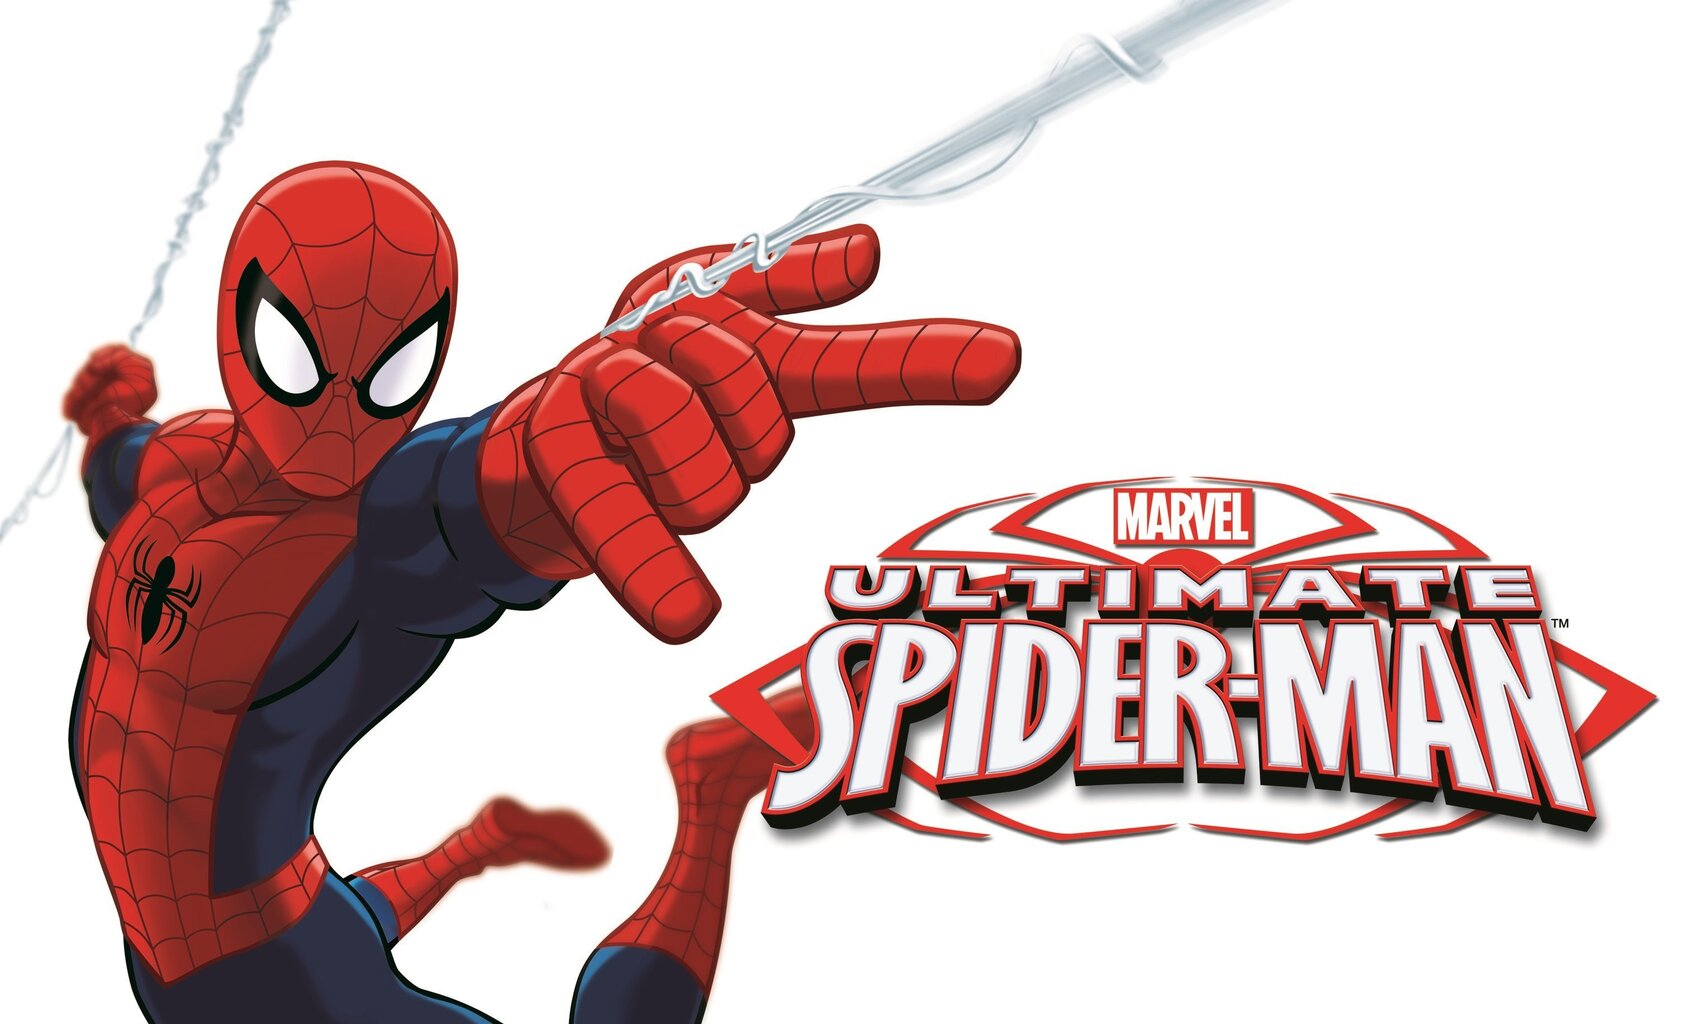 Tualetes ūdens Marvel Ultimate Spiderman EDT zēniem 100 ml cena un informācija | Bērnu smaržas | 220.lv